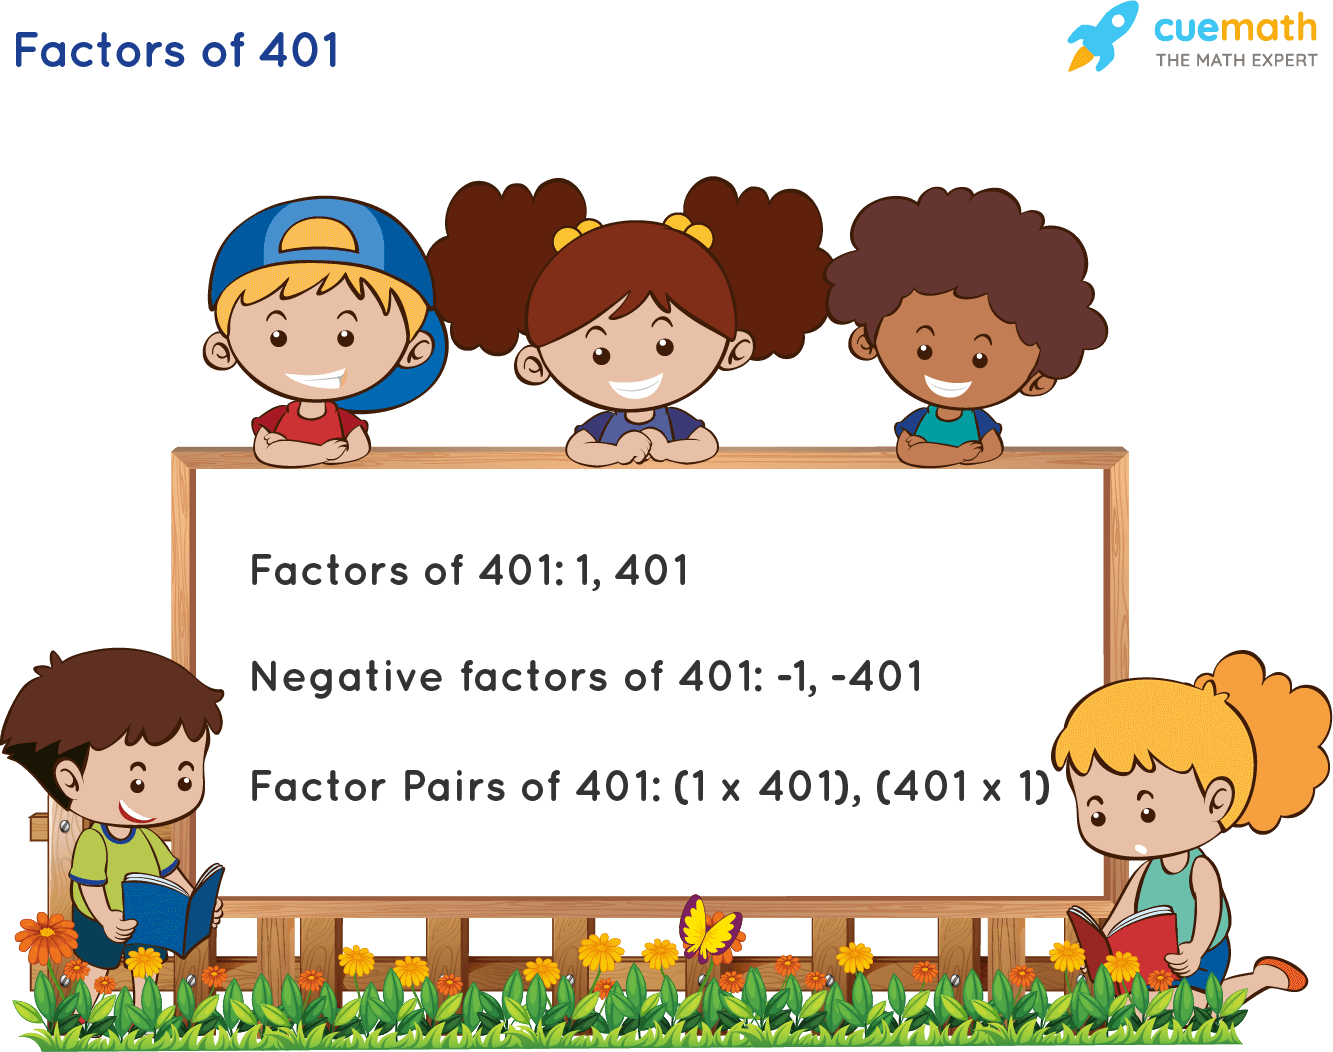 Factors of 401